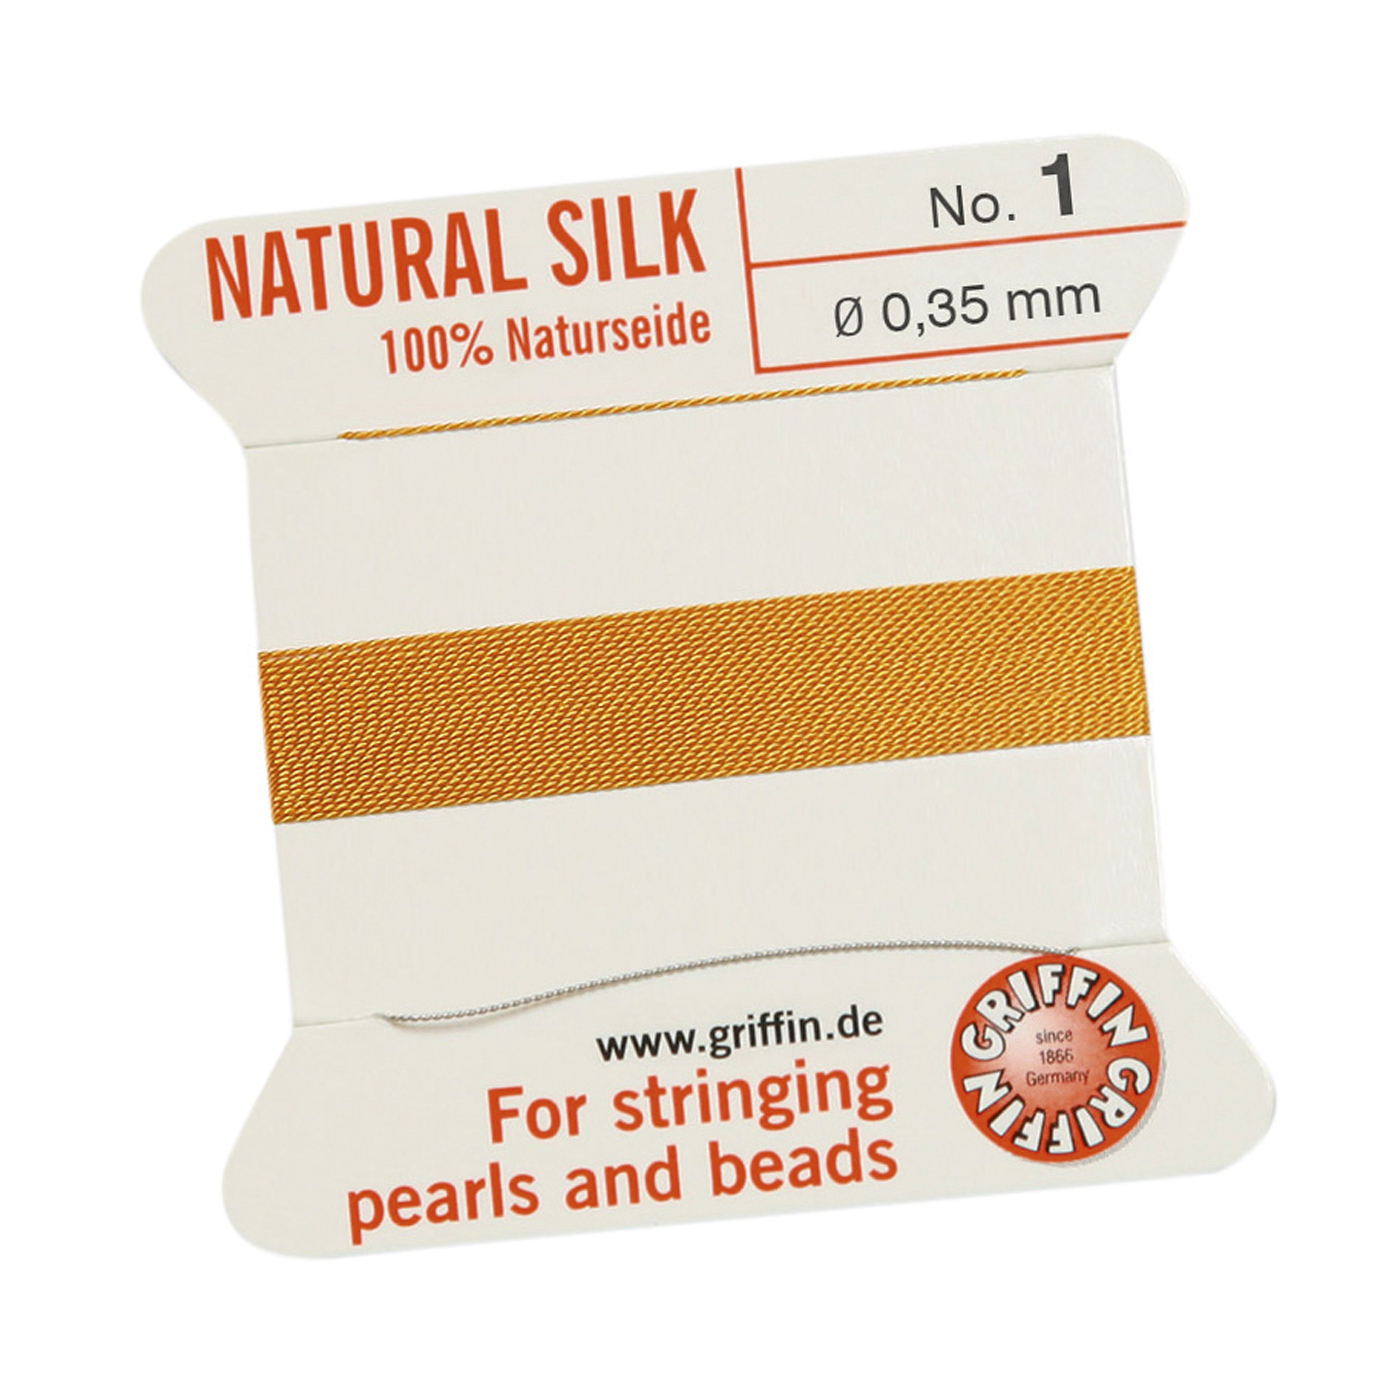 Bead Cord 100% Natural Silk, Dark Yellow, No. 1 - 2 m